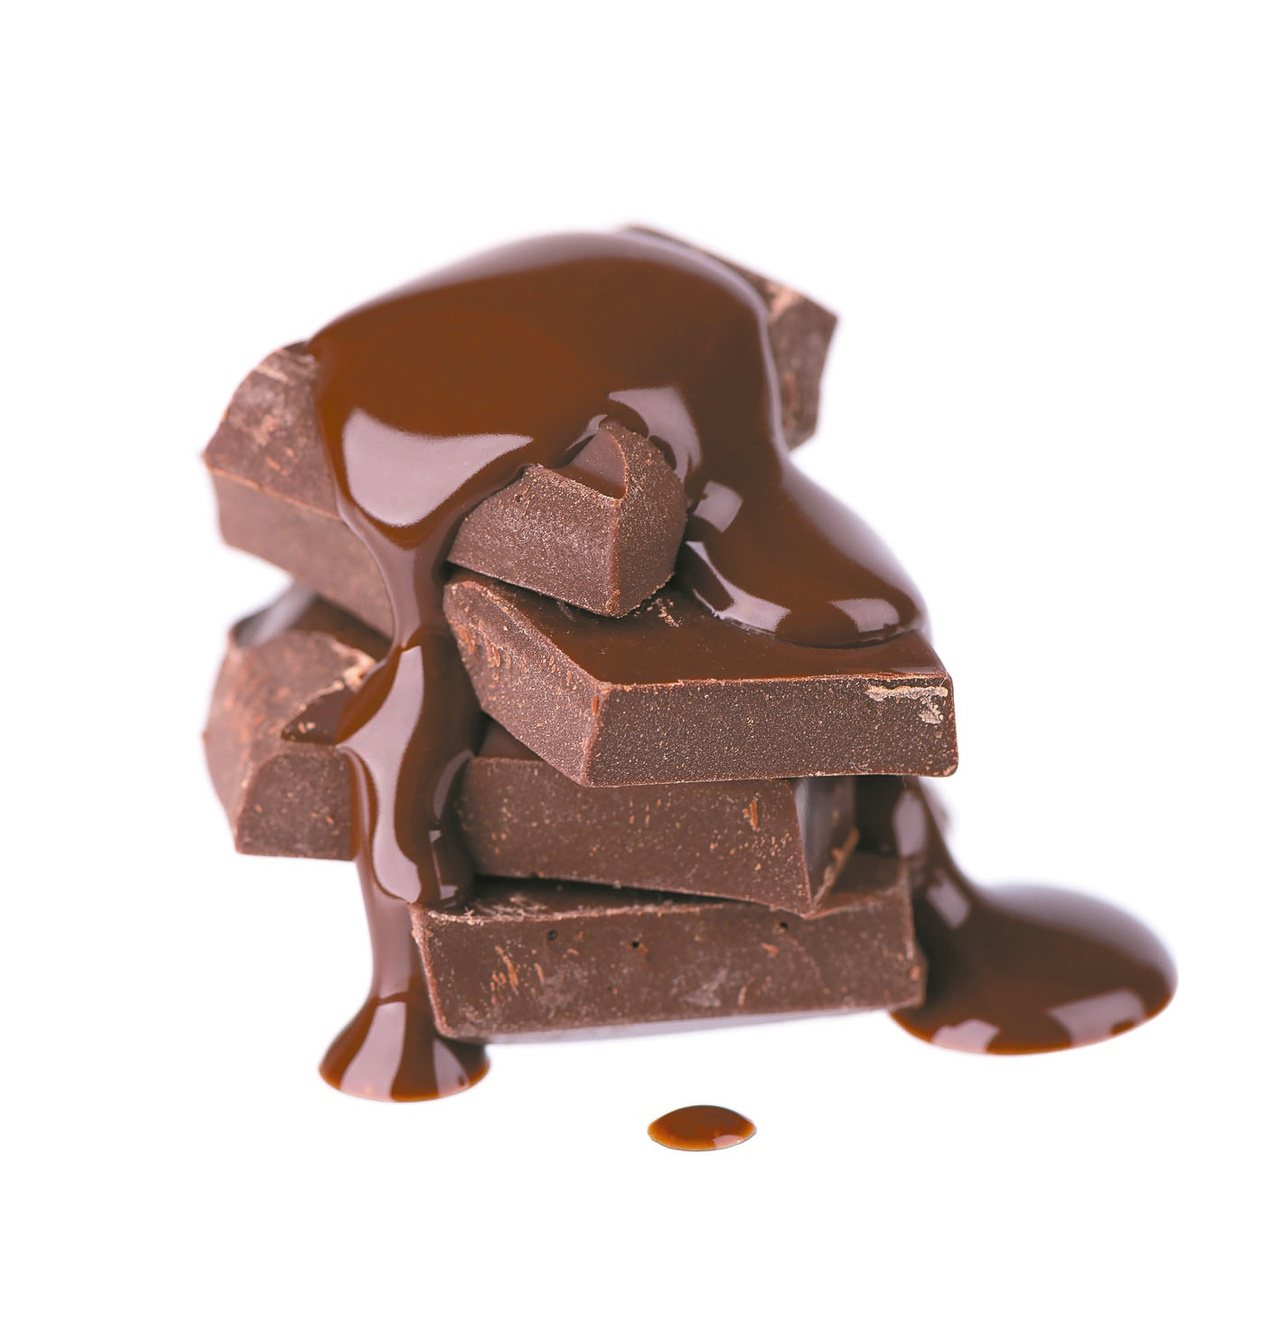 選擇巧克力應重質不重量，以及少量吃、分享吃的原則。圖╱123RF